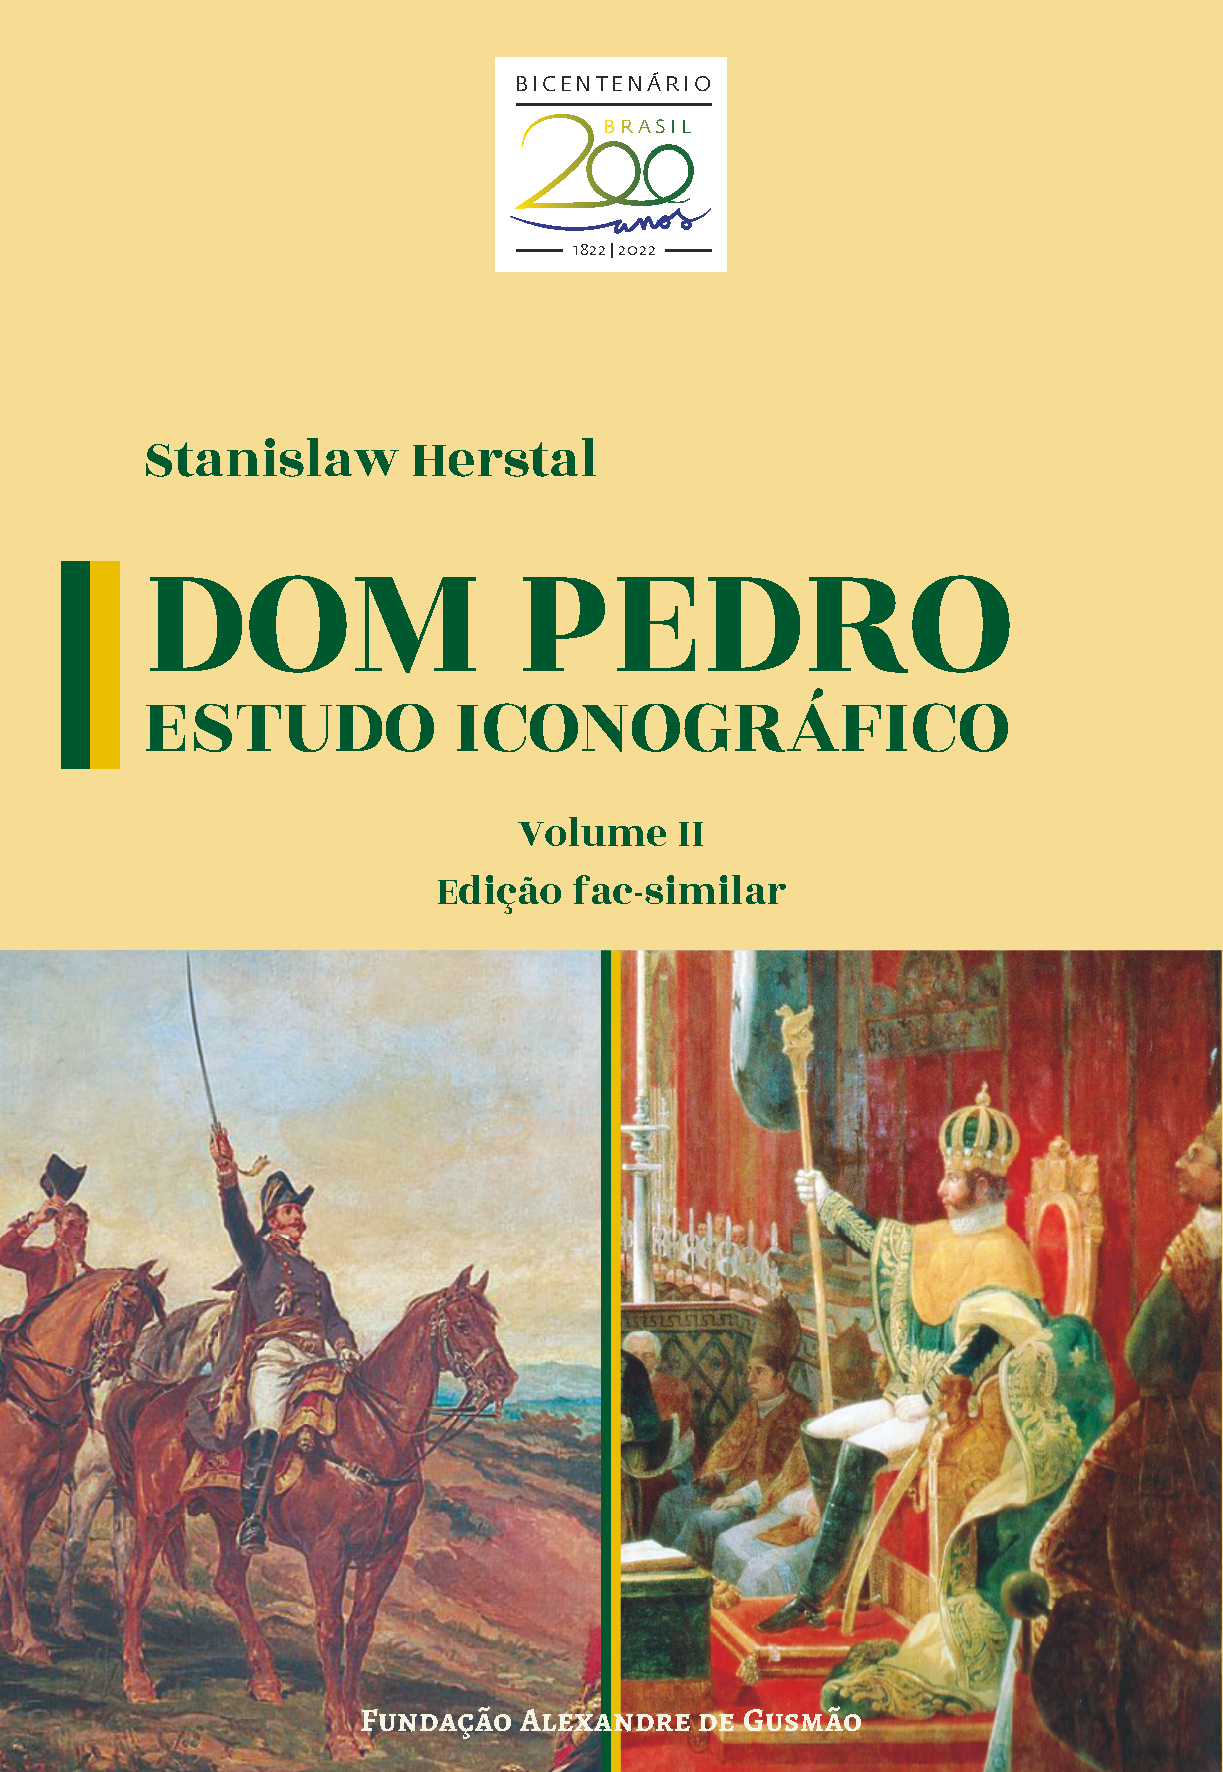 PDF) 200 anos da Independência para quem?, volume 1